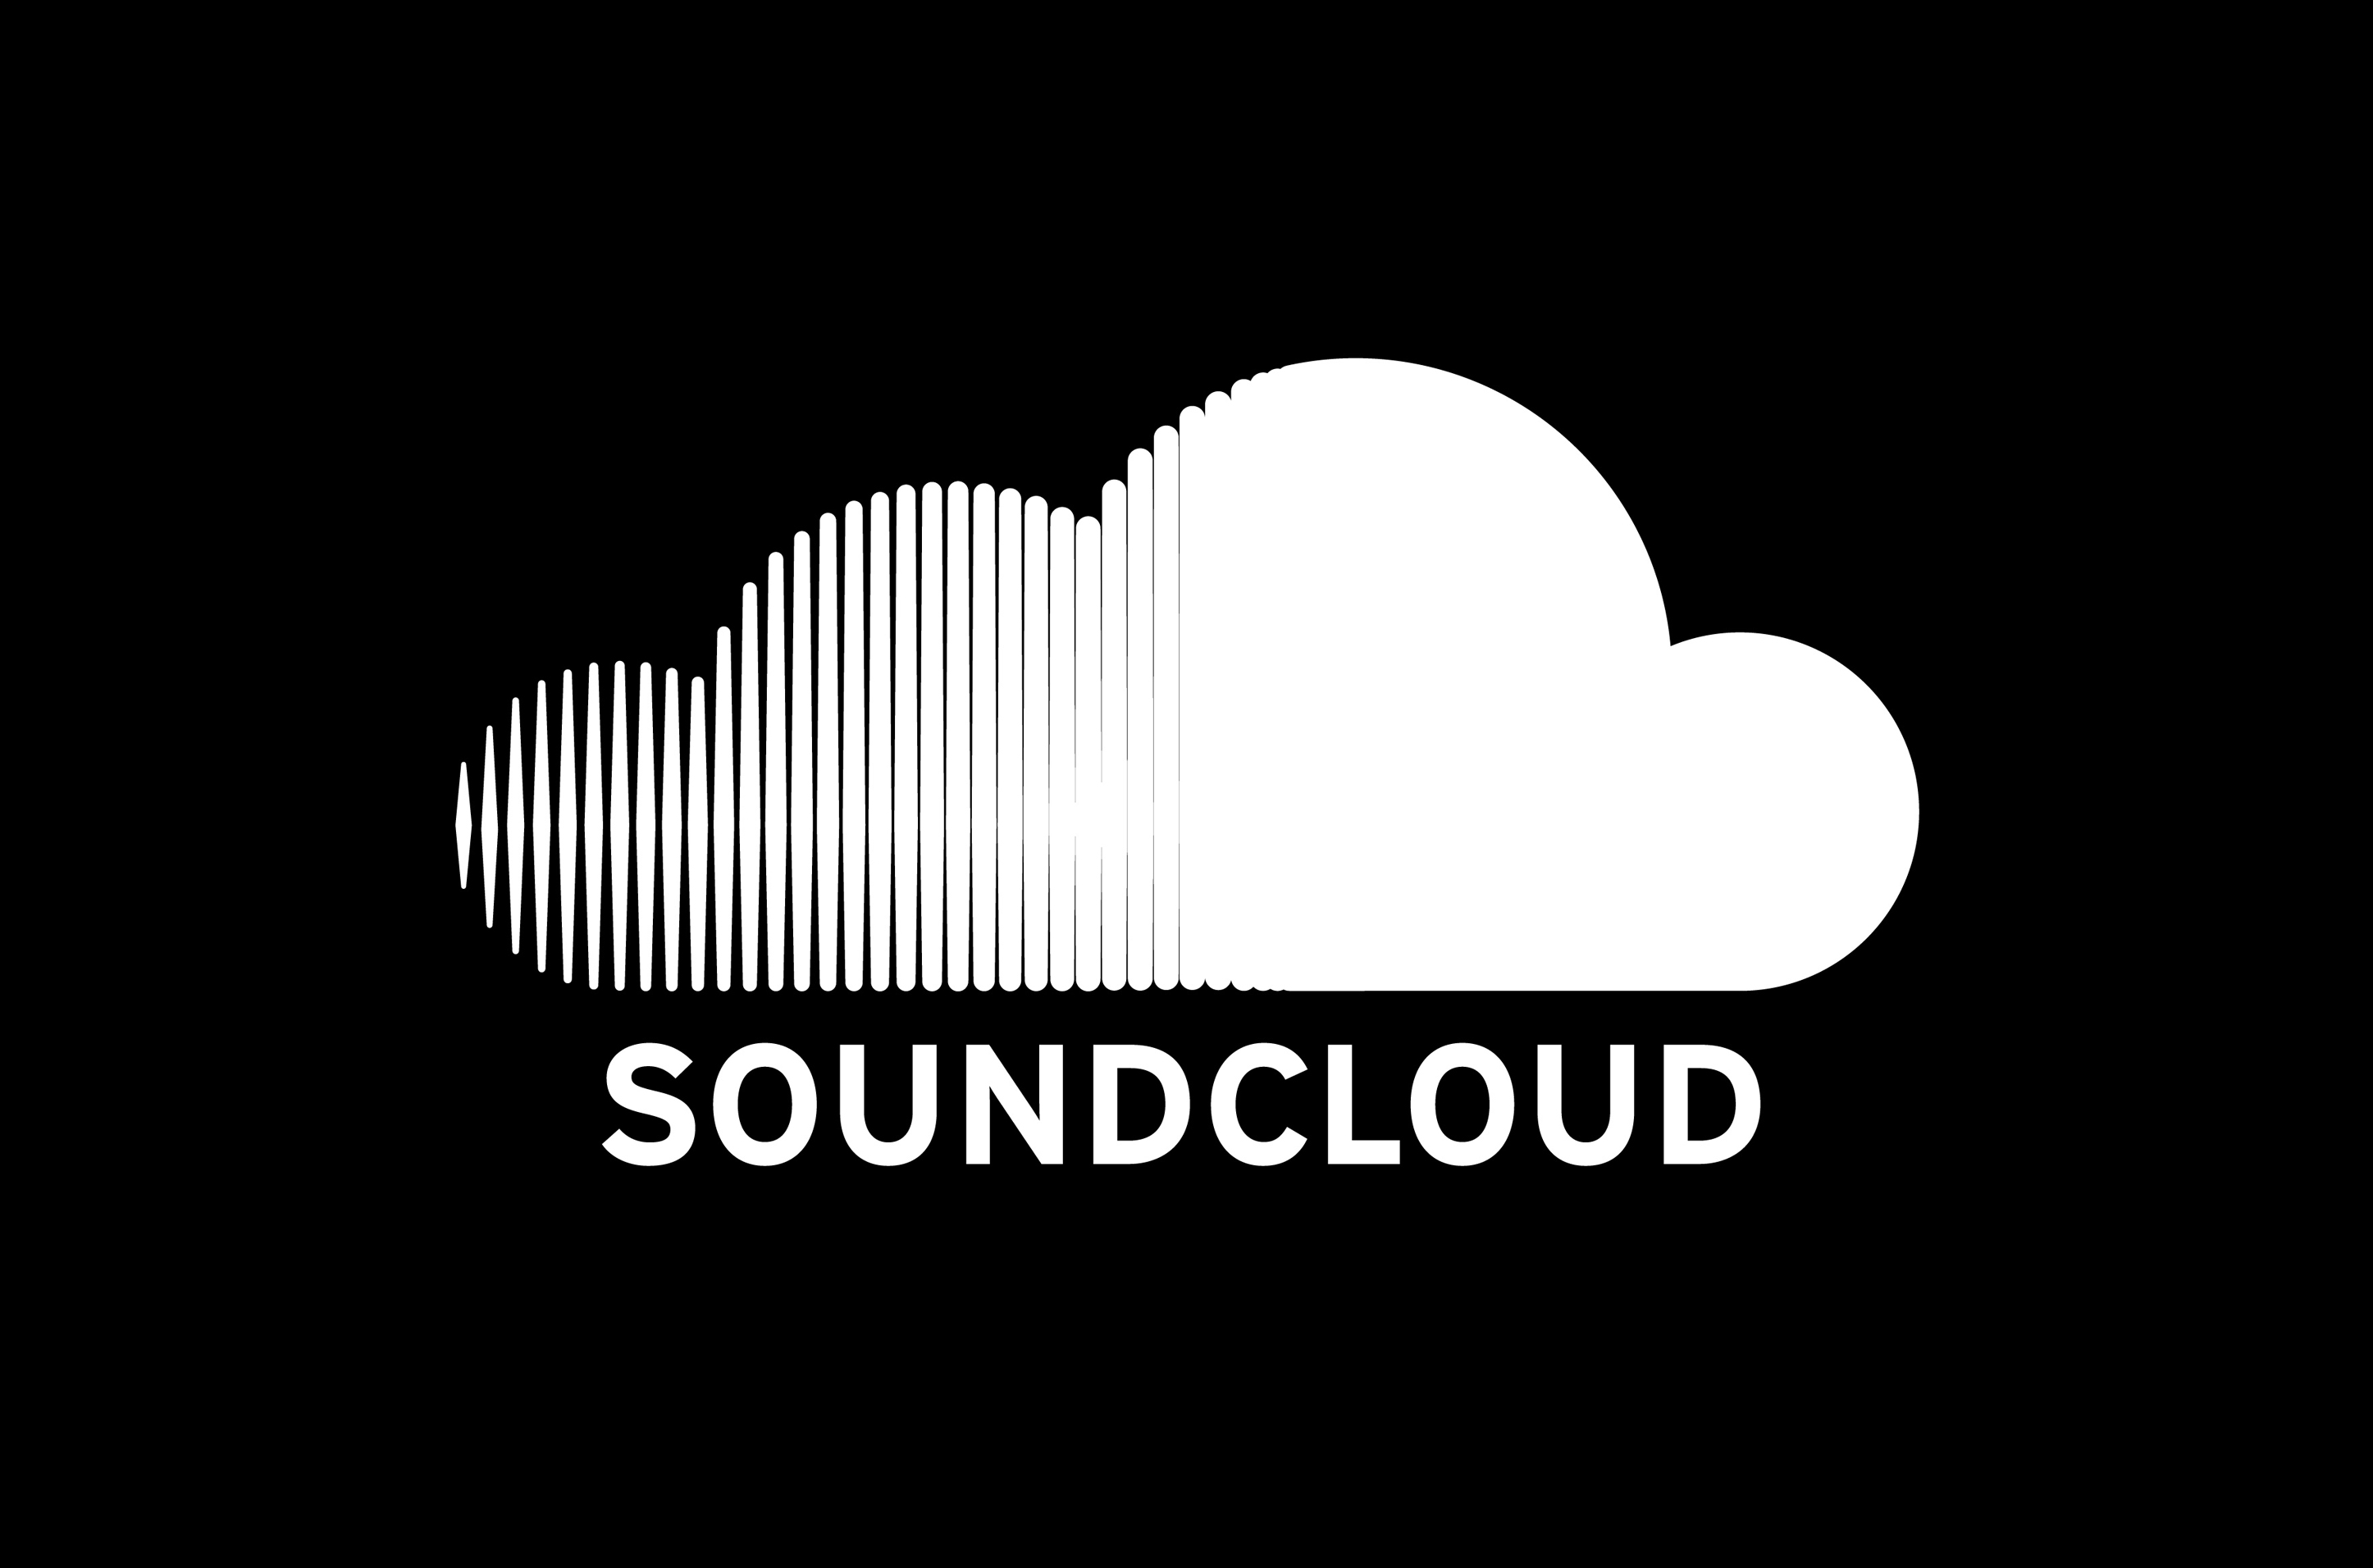 soundcloud download music